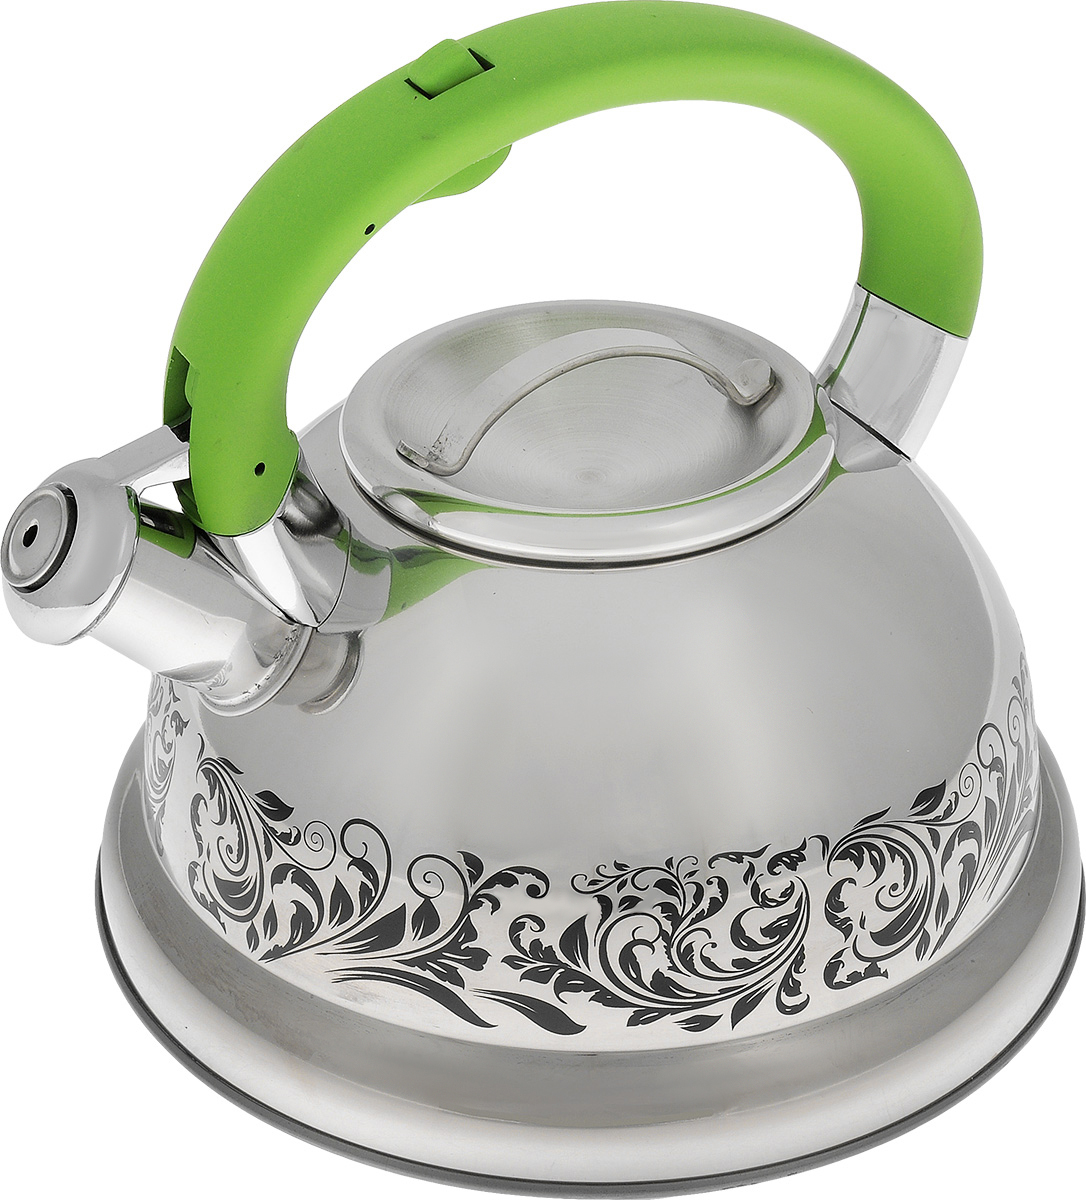 Озон интернет магазин чайники. Mayer Boch чайник зелёный. Mayer & Boch чайник 25663 2,6 л. Чайник Майер бош для газовой плиты. Чайник Mayer Boch со свистком.